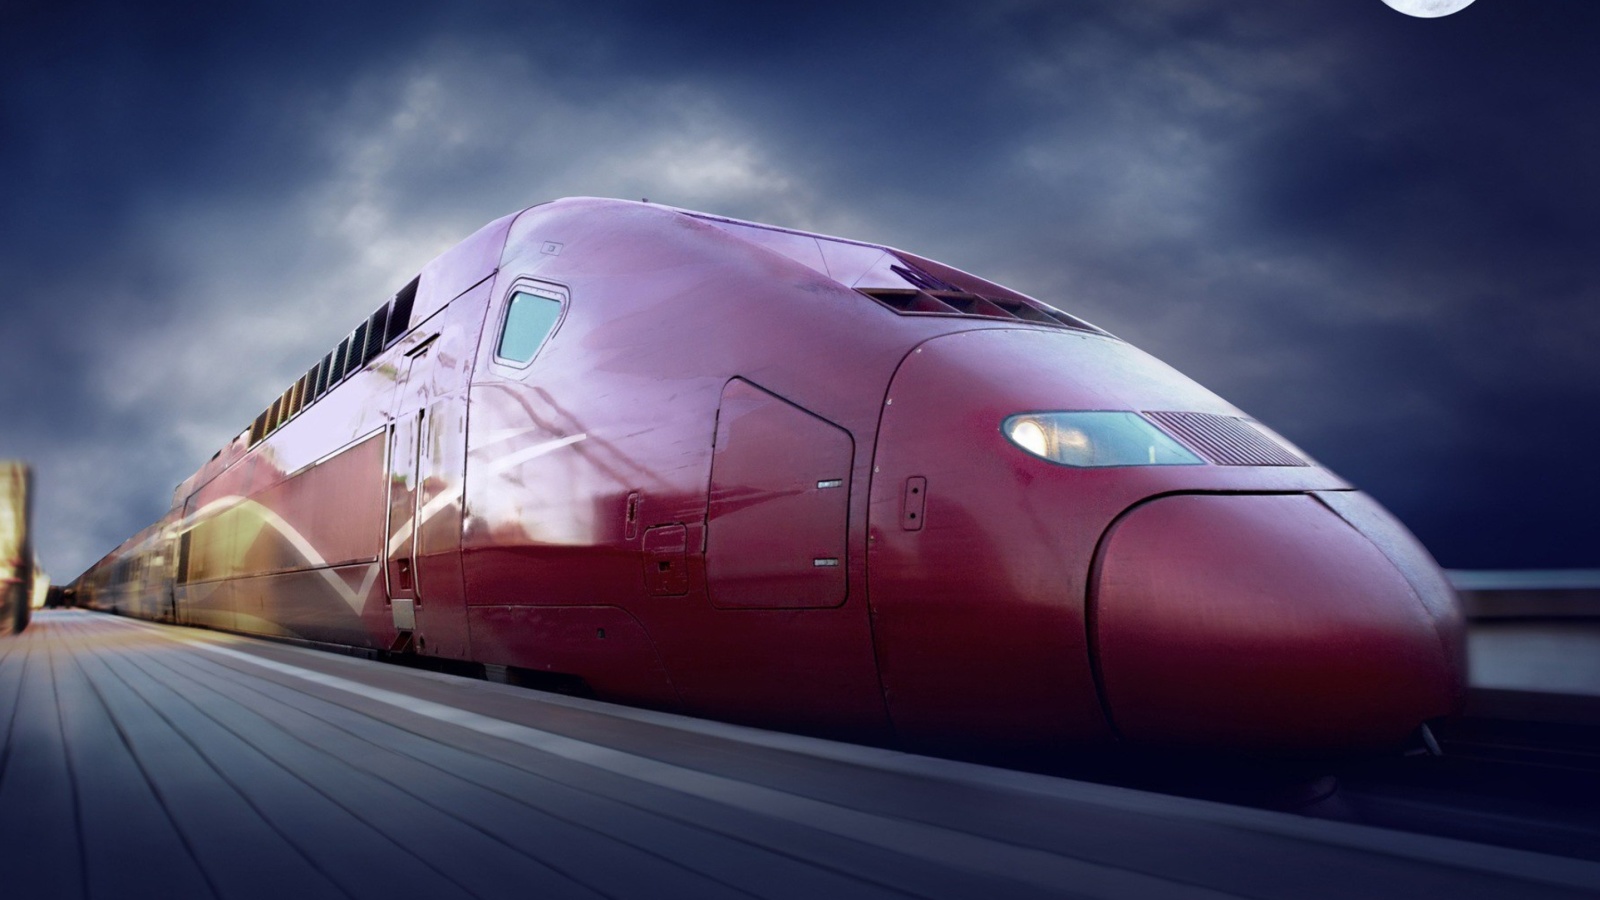 Обои Thalys train on high speed line 1600x900